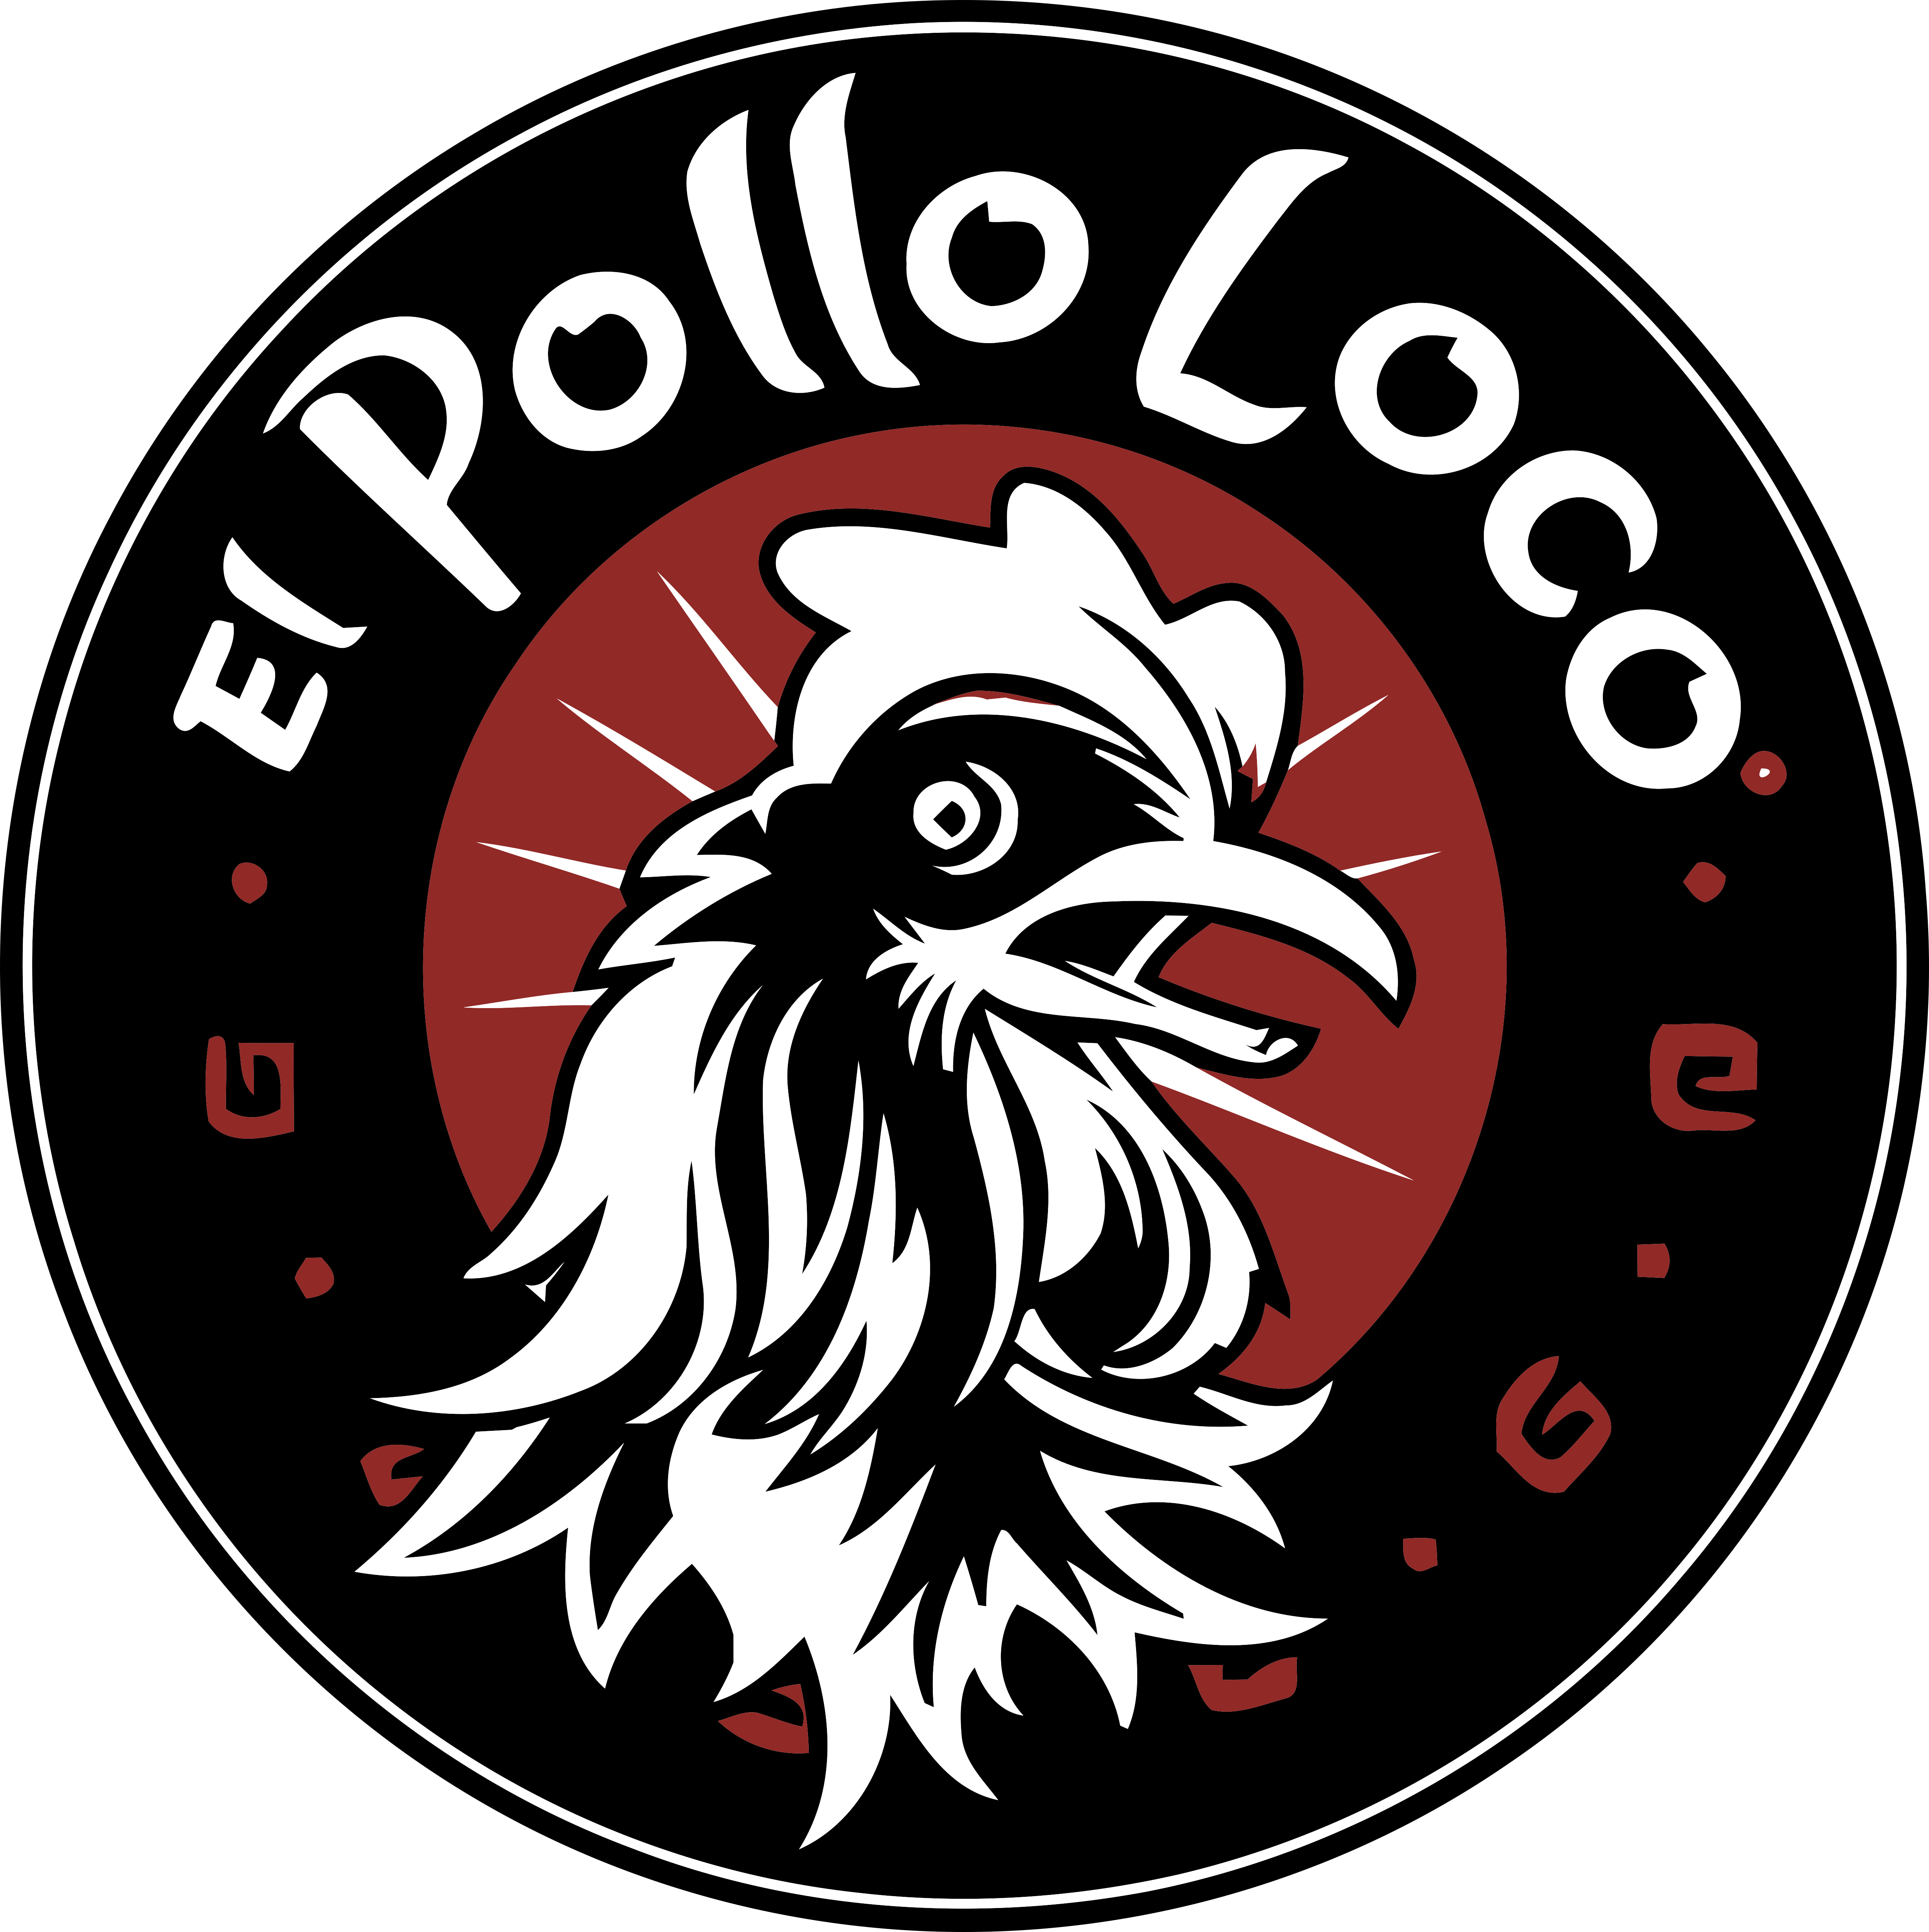 El Pollo Loco – Logos Download